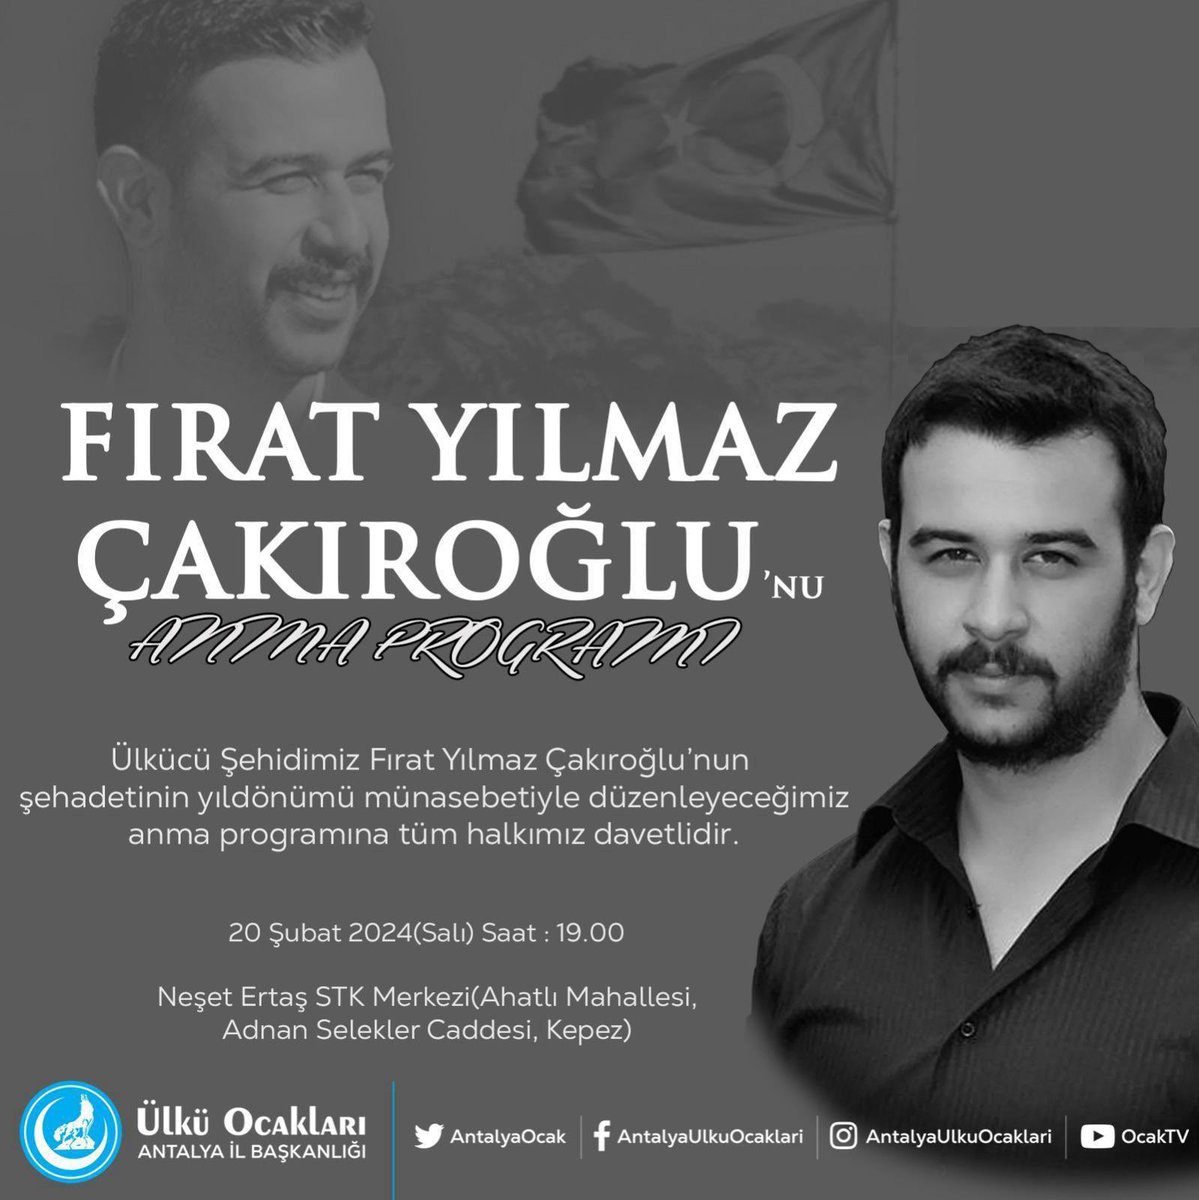 Ülkü Ocakları Antalya İl Başkanlığı’nın düzenlediği Ülkücü Şehidimiz Fırat Yılmaz Çakıroğlu’nu anma programına tüm halkımız davetlidir.

@Ulku_Ocaklari 
@AntalyaOcak 
@mhpantalyail 
@FerhatAksoy_07